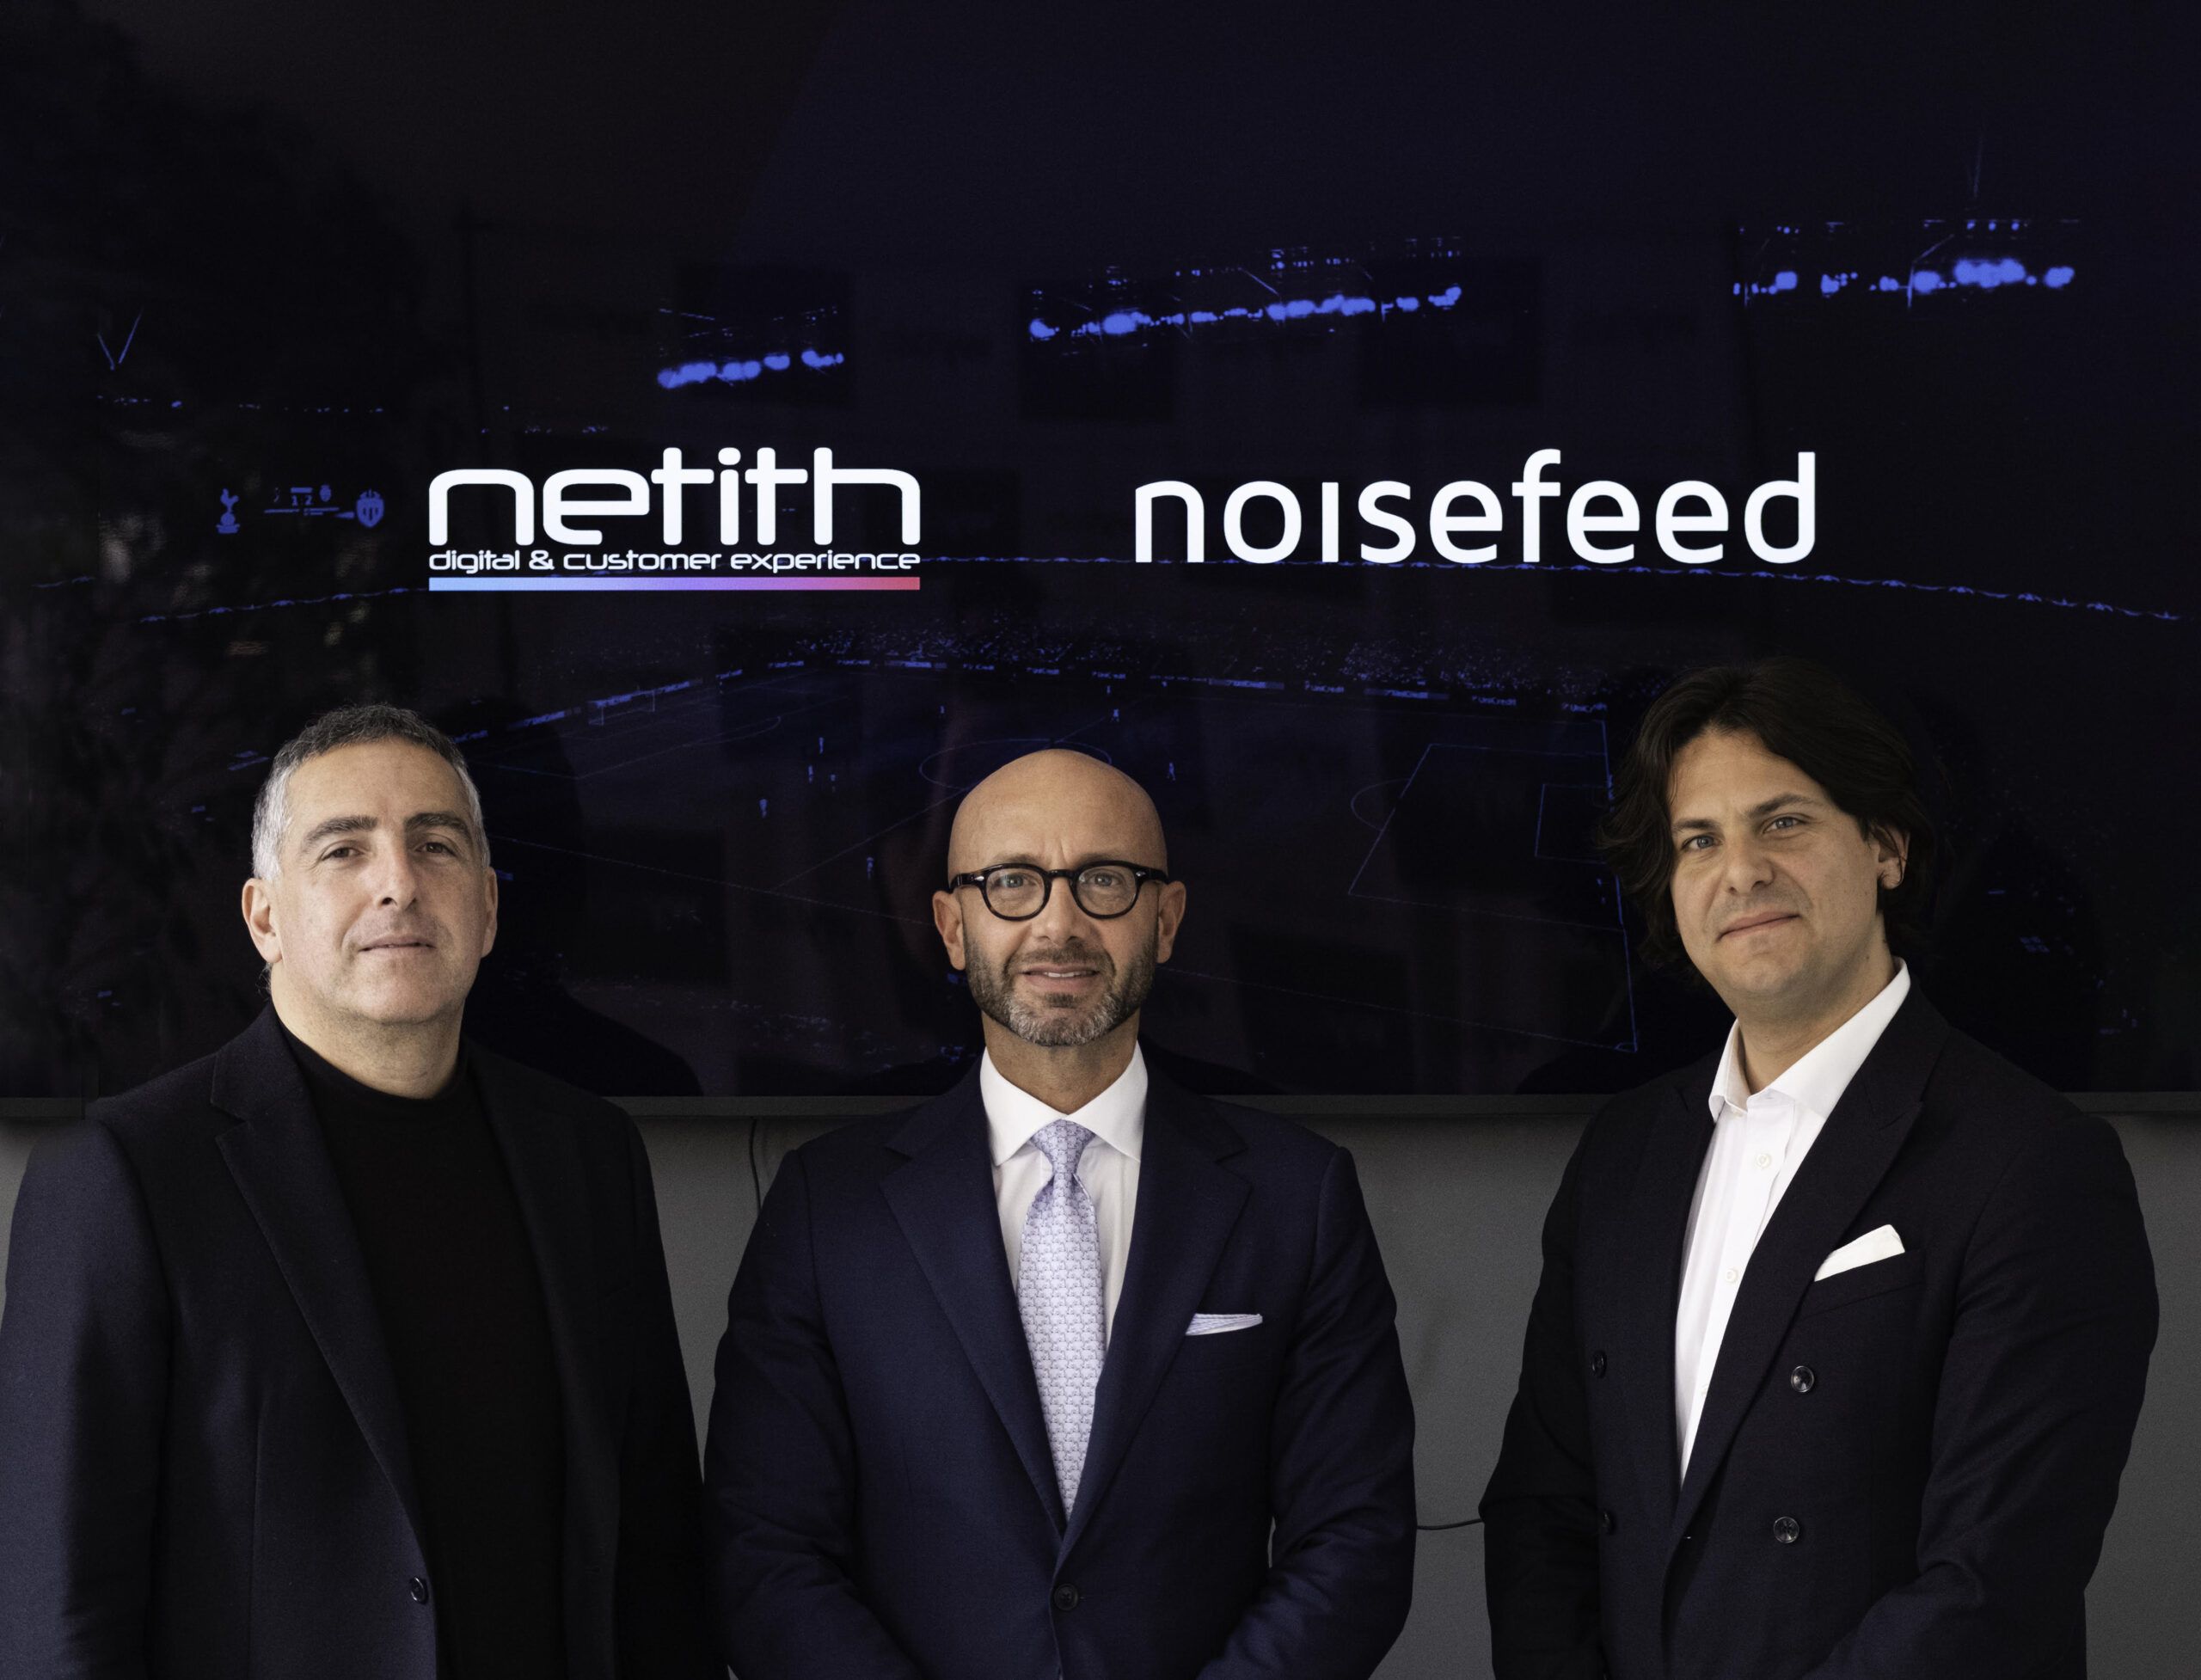 Con Noisefeed in Netith, sarà Paternò al centro della nuova Etna Valley